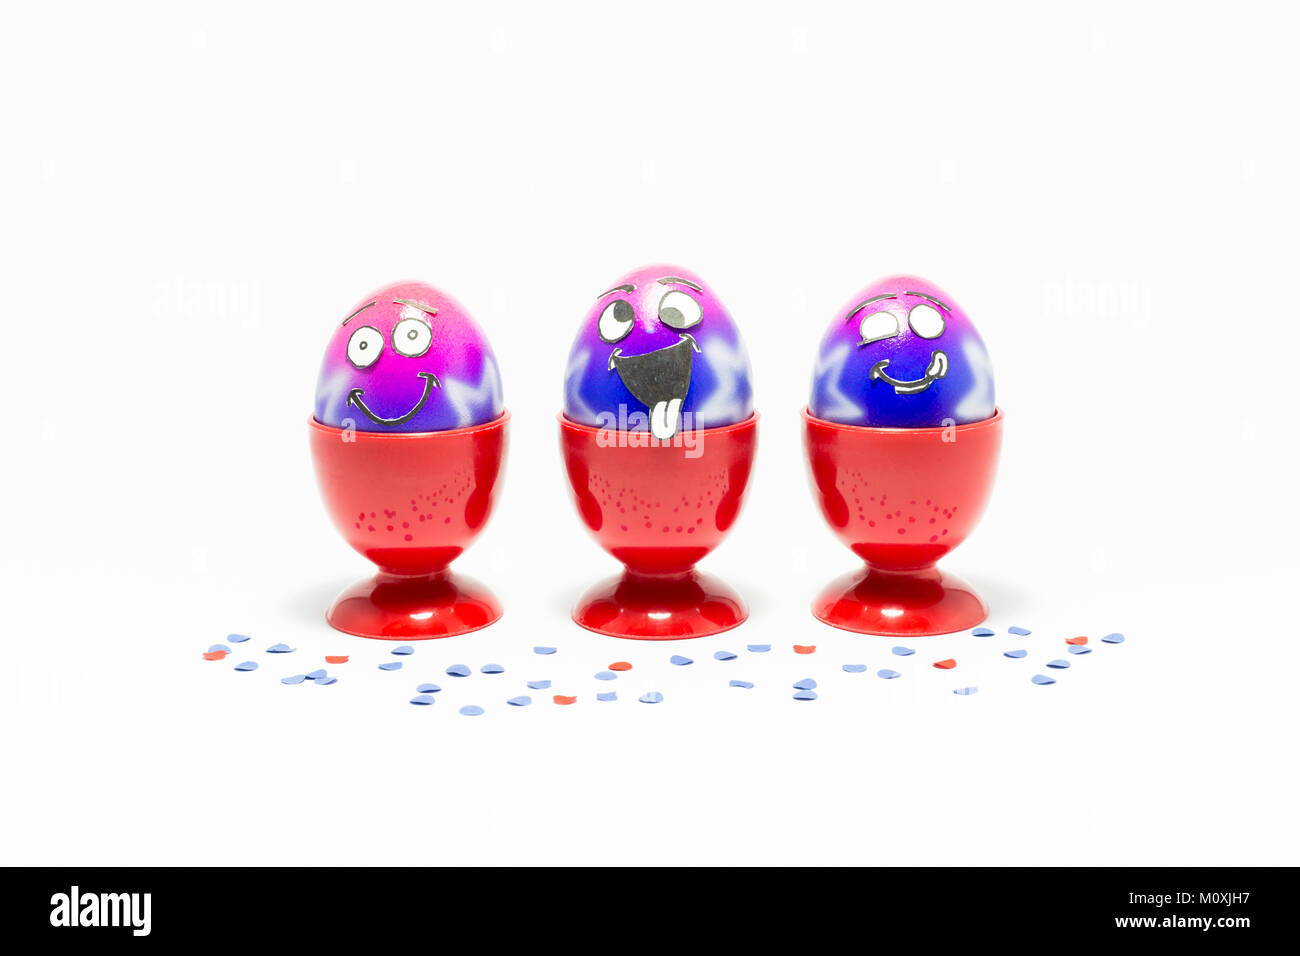 Groupe d'oeufs de Pâques peints colorés avec drôle cartoon style visages dans des tasses et des oeufs en plastique rouge confetti colorés sur fond blanc Banque D'Images